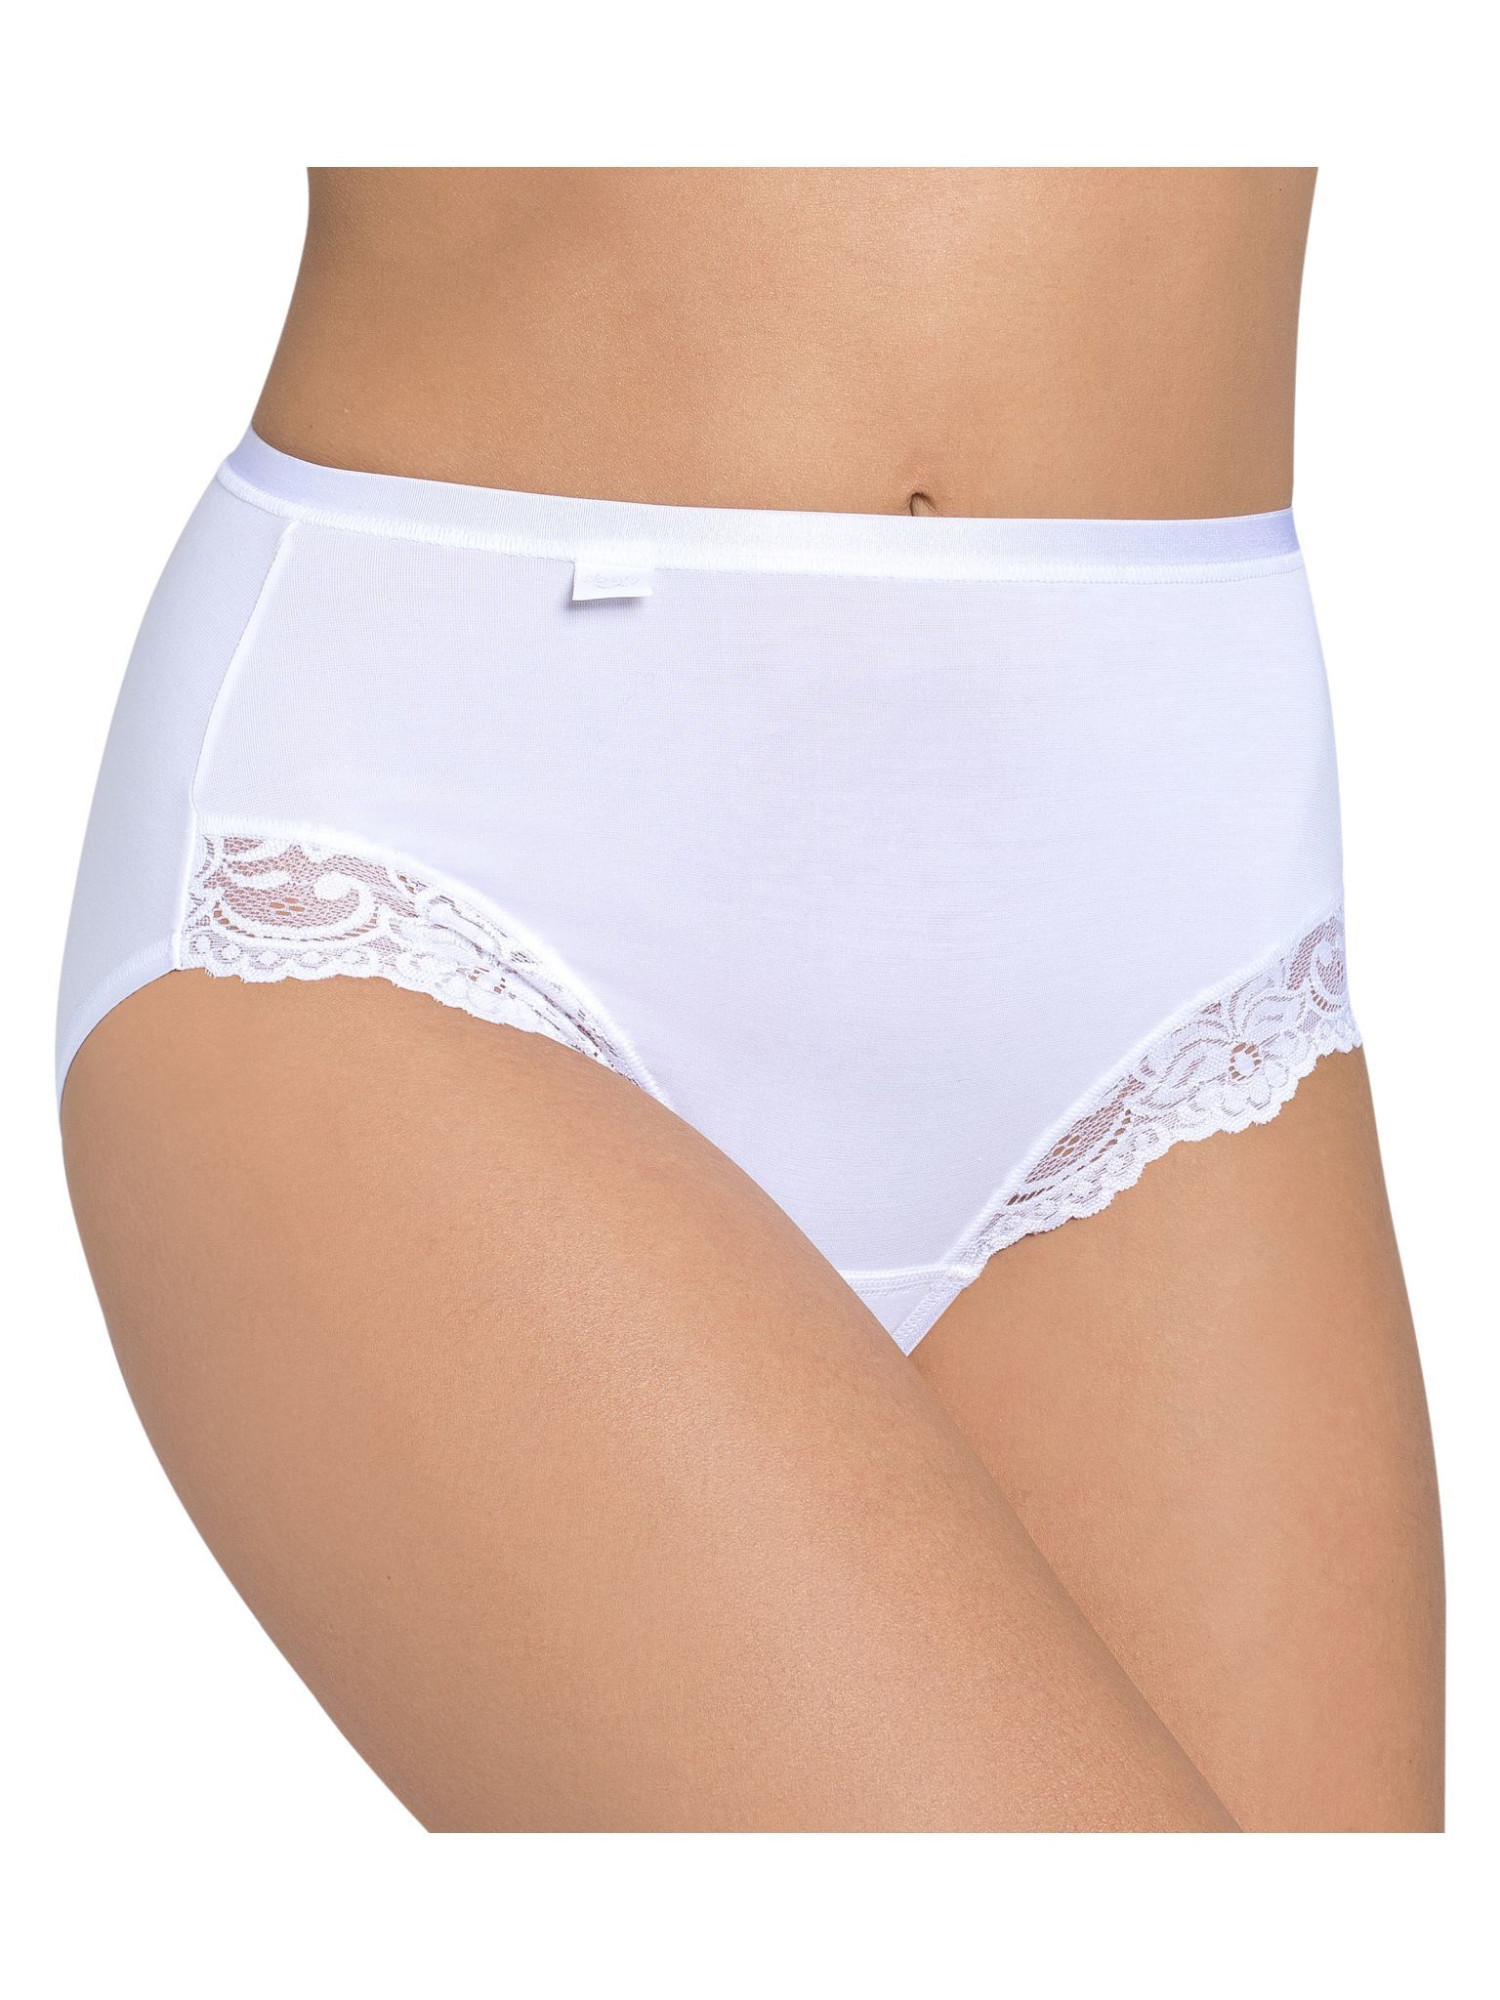 Dámské kalhotky Romance Maxi bílé - Sloggi WHITE 38